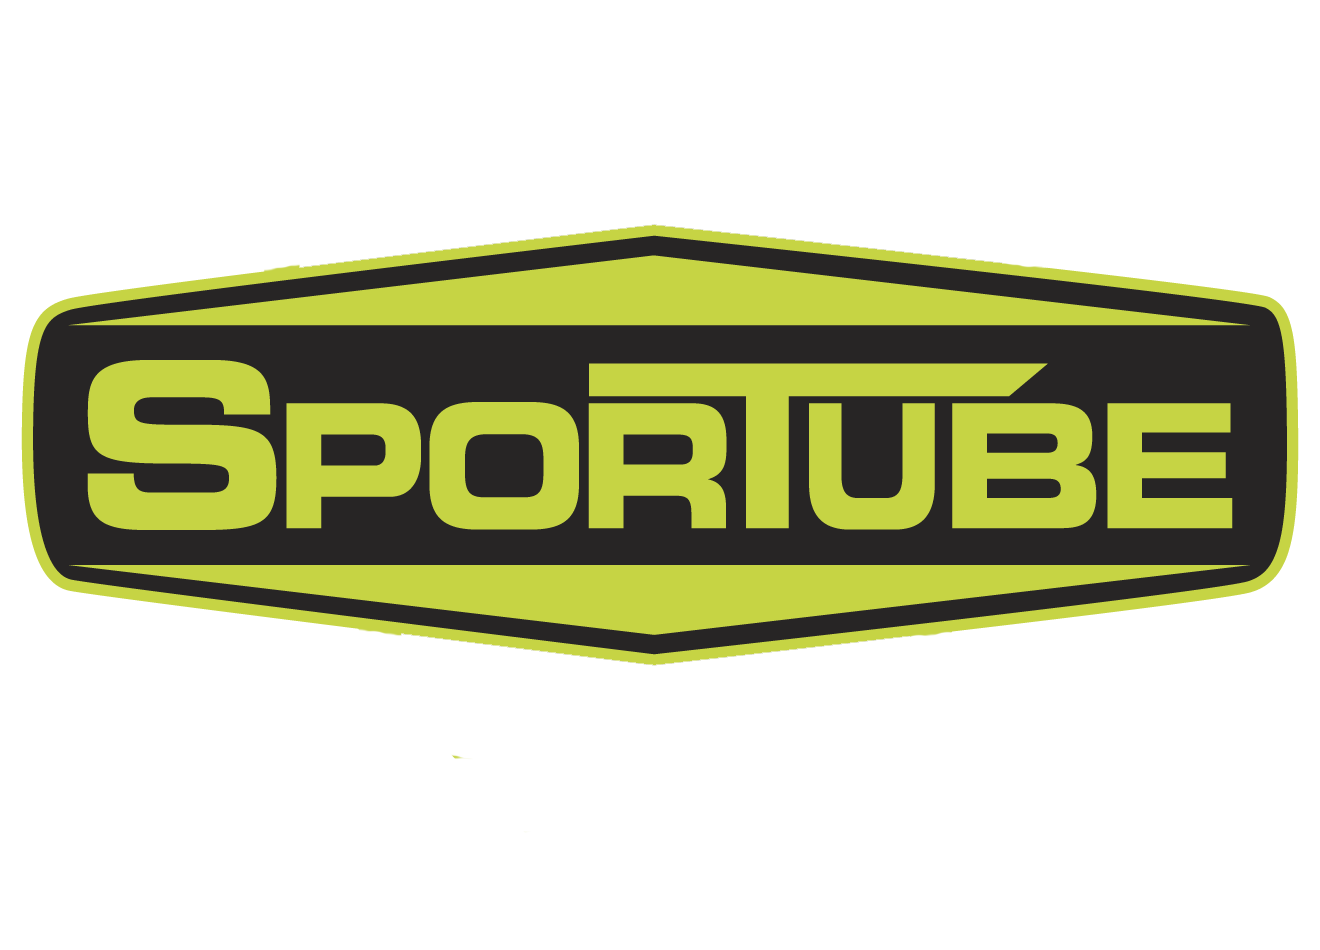 Final sportube revise badge logo (2).png